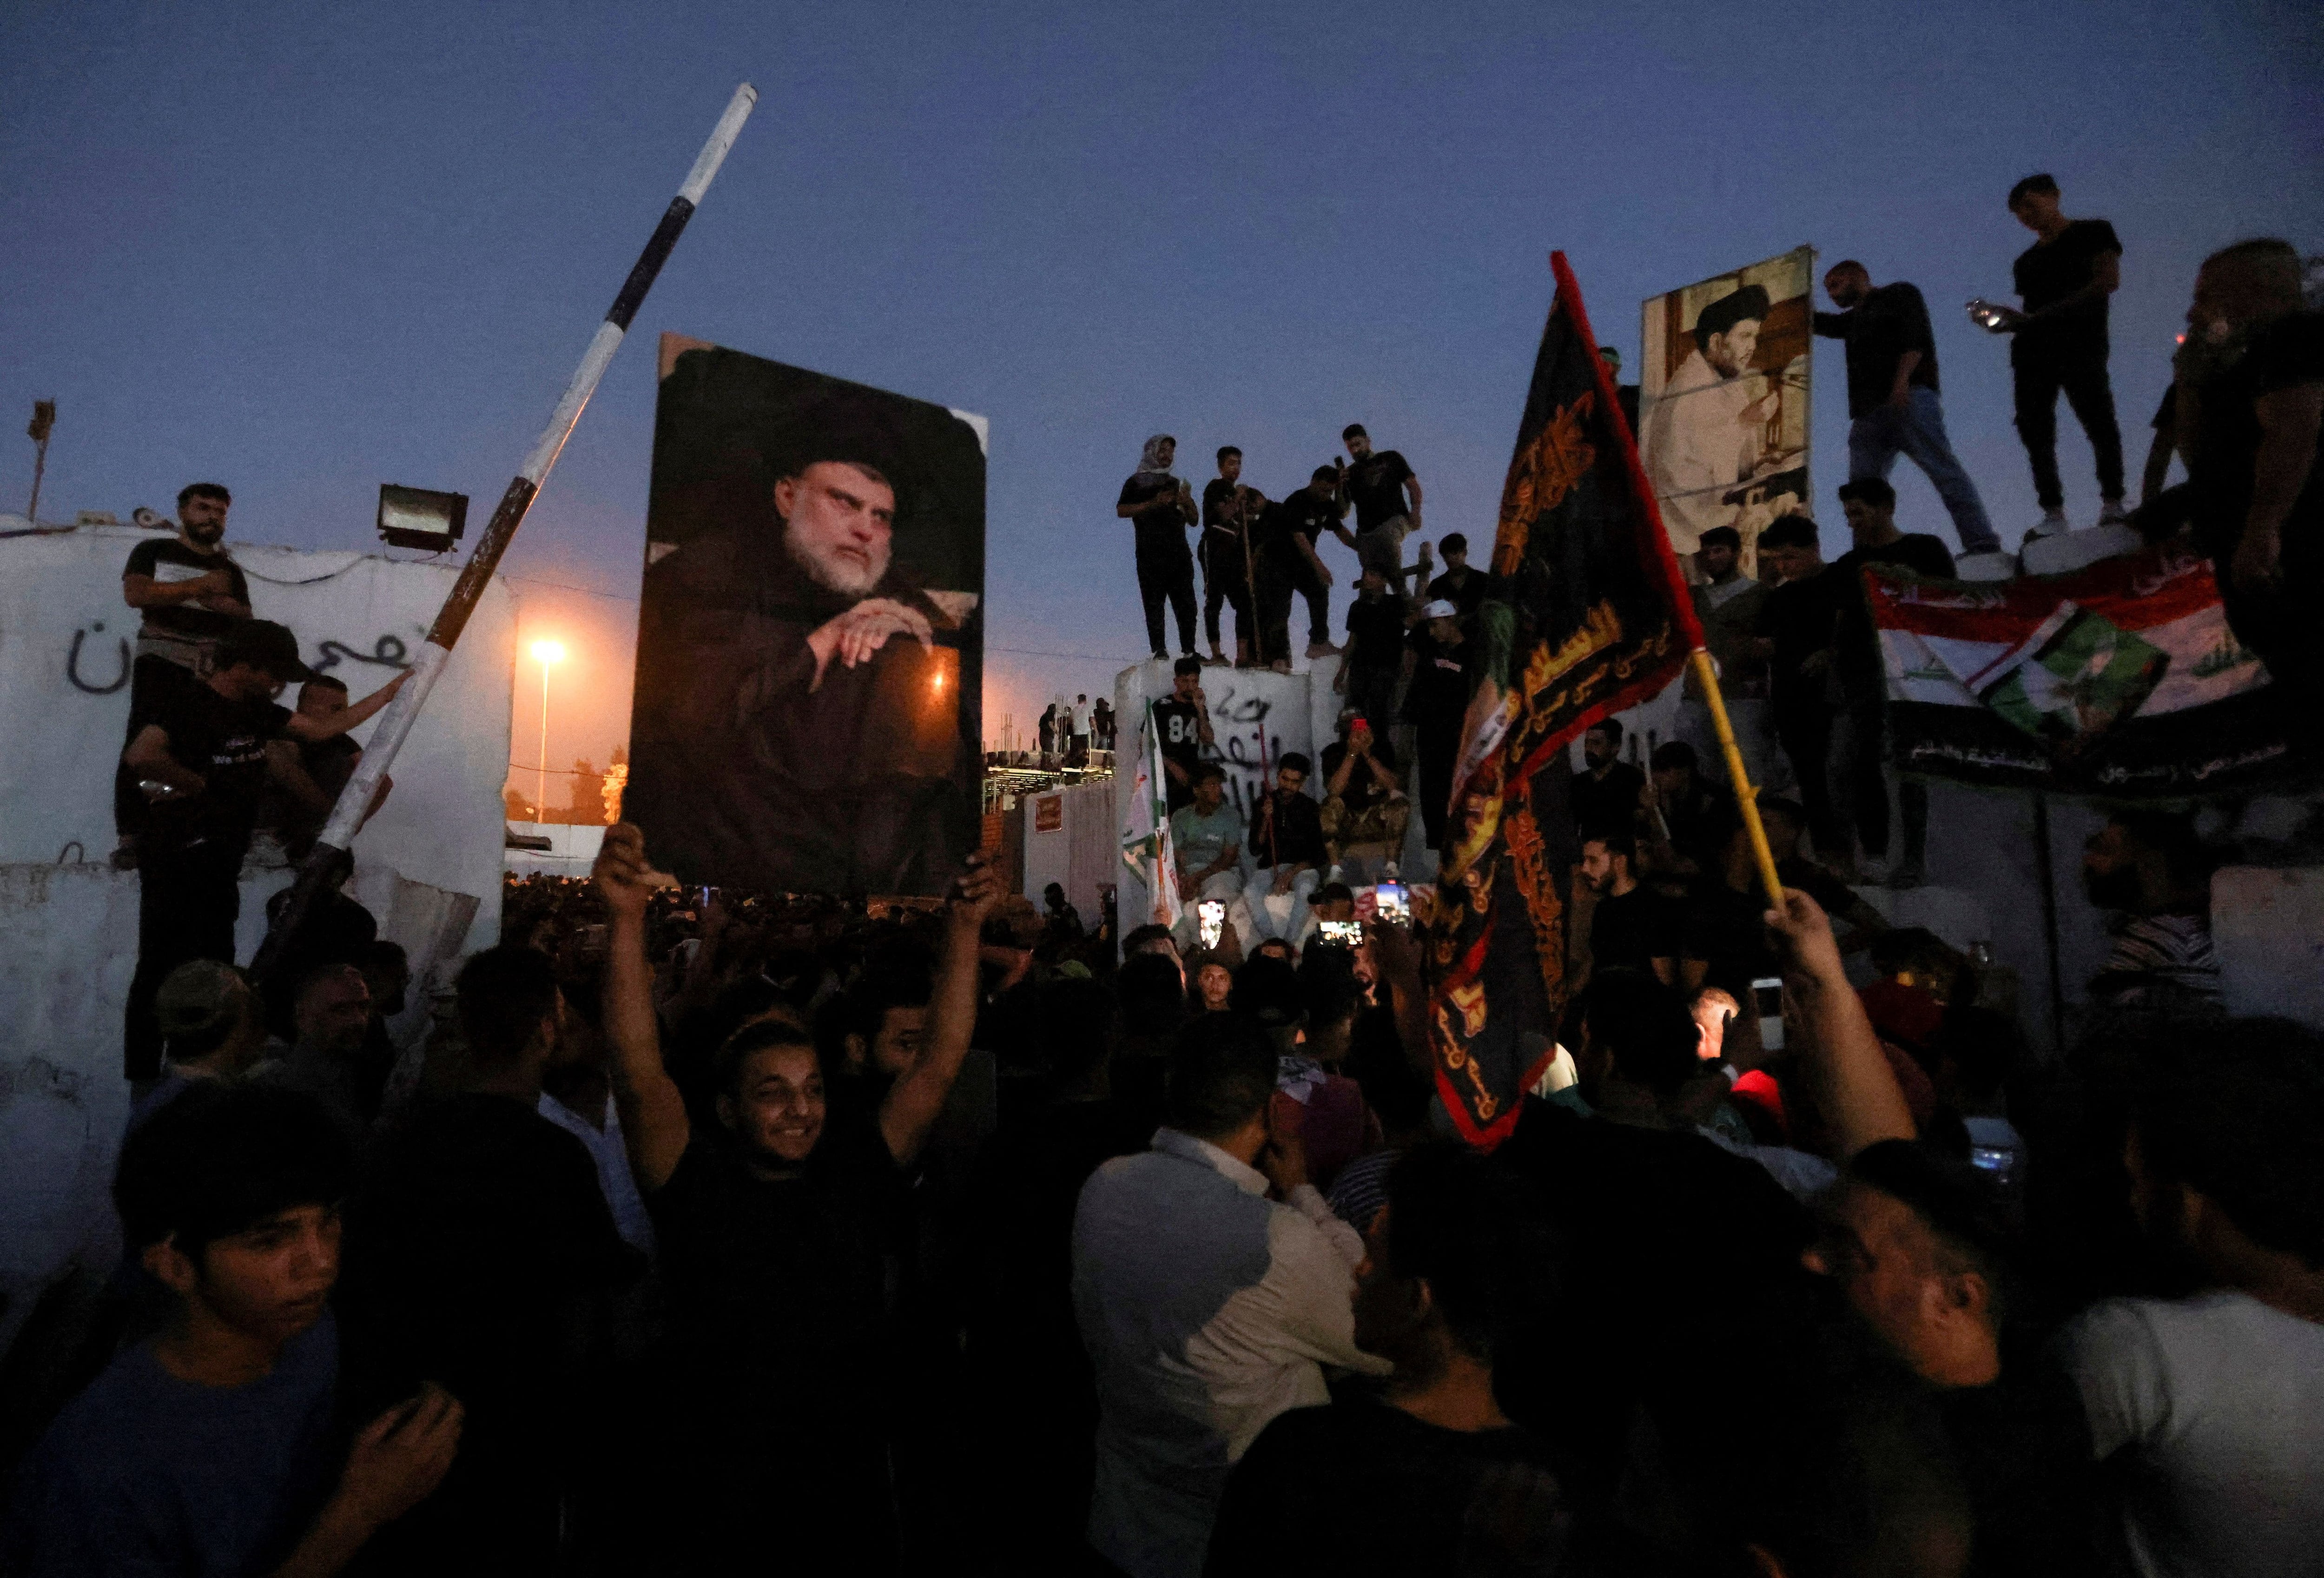 La embajada de Suecia en Irak fue incendiada durante una manifestación organizada por los seguidores de un líder religioso. (REUTERS)